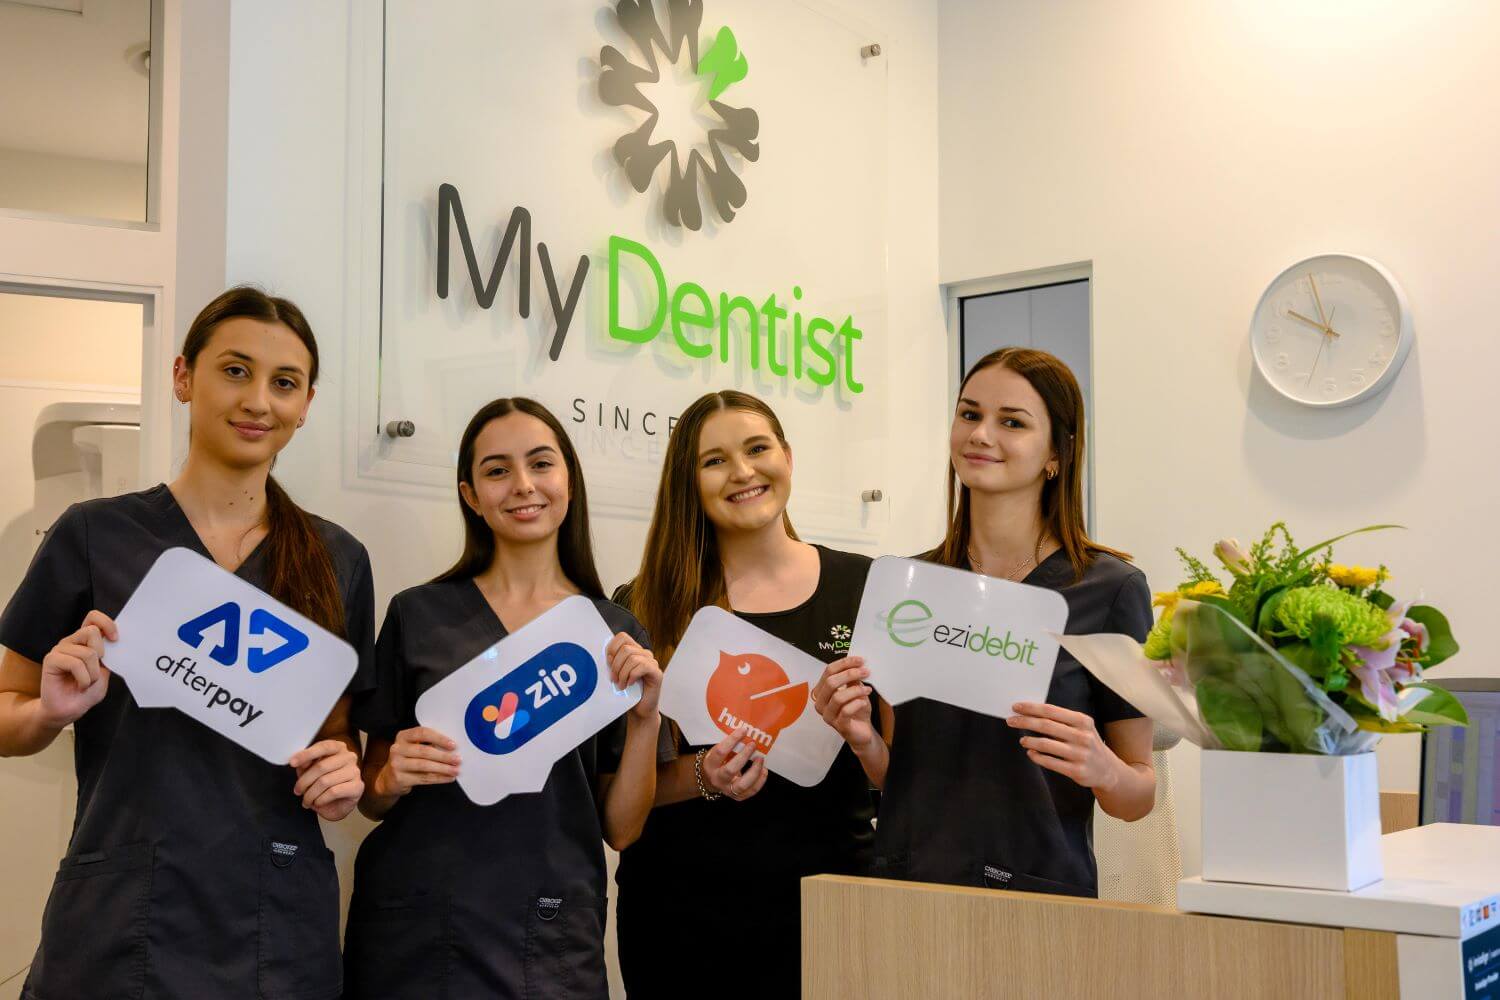 Payment Plan Options - Alderley, Newmarket, Brisbane - My Dentist